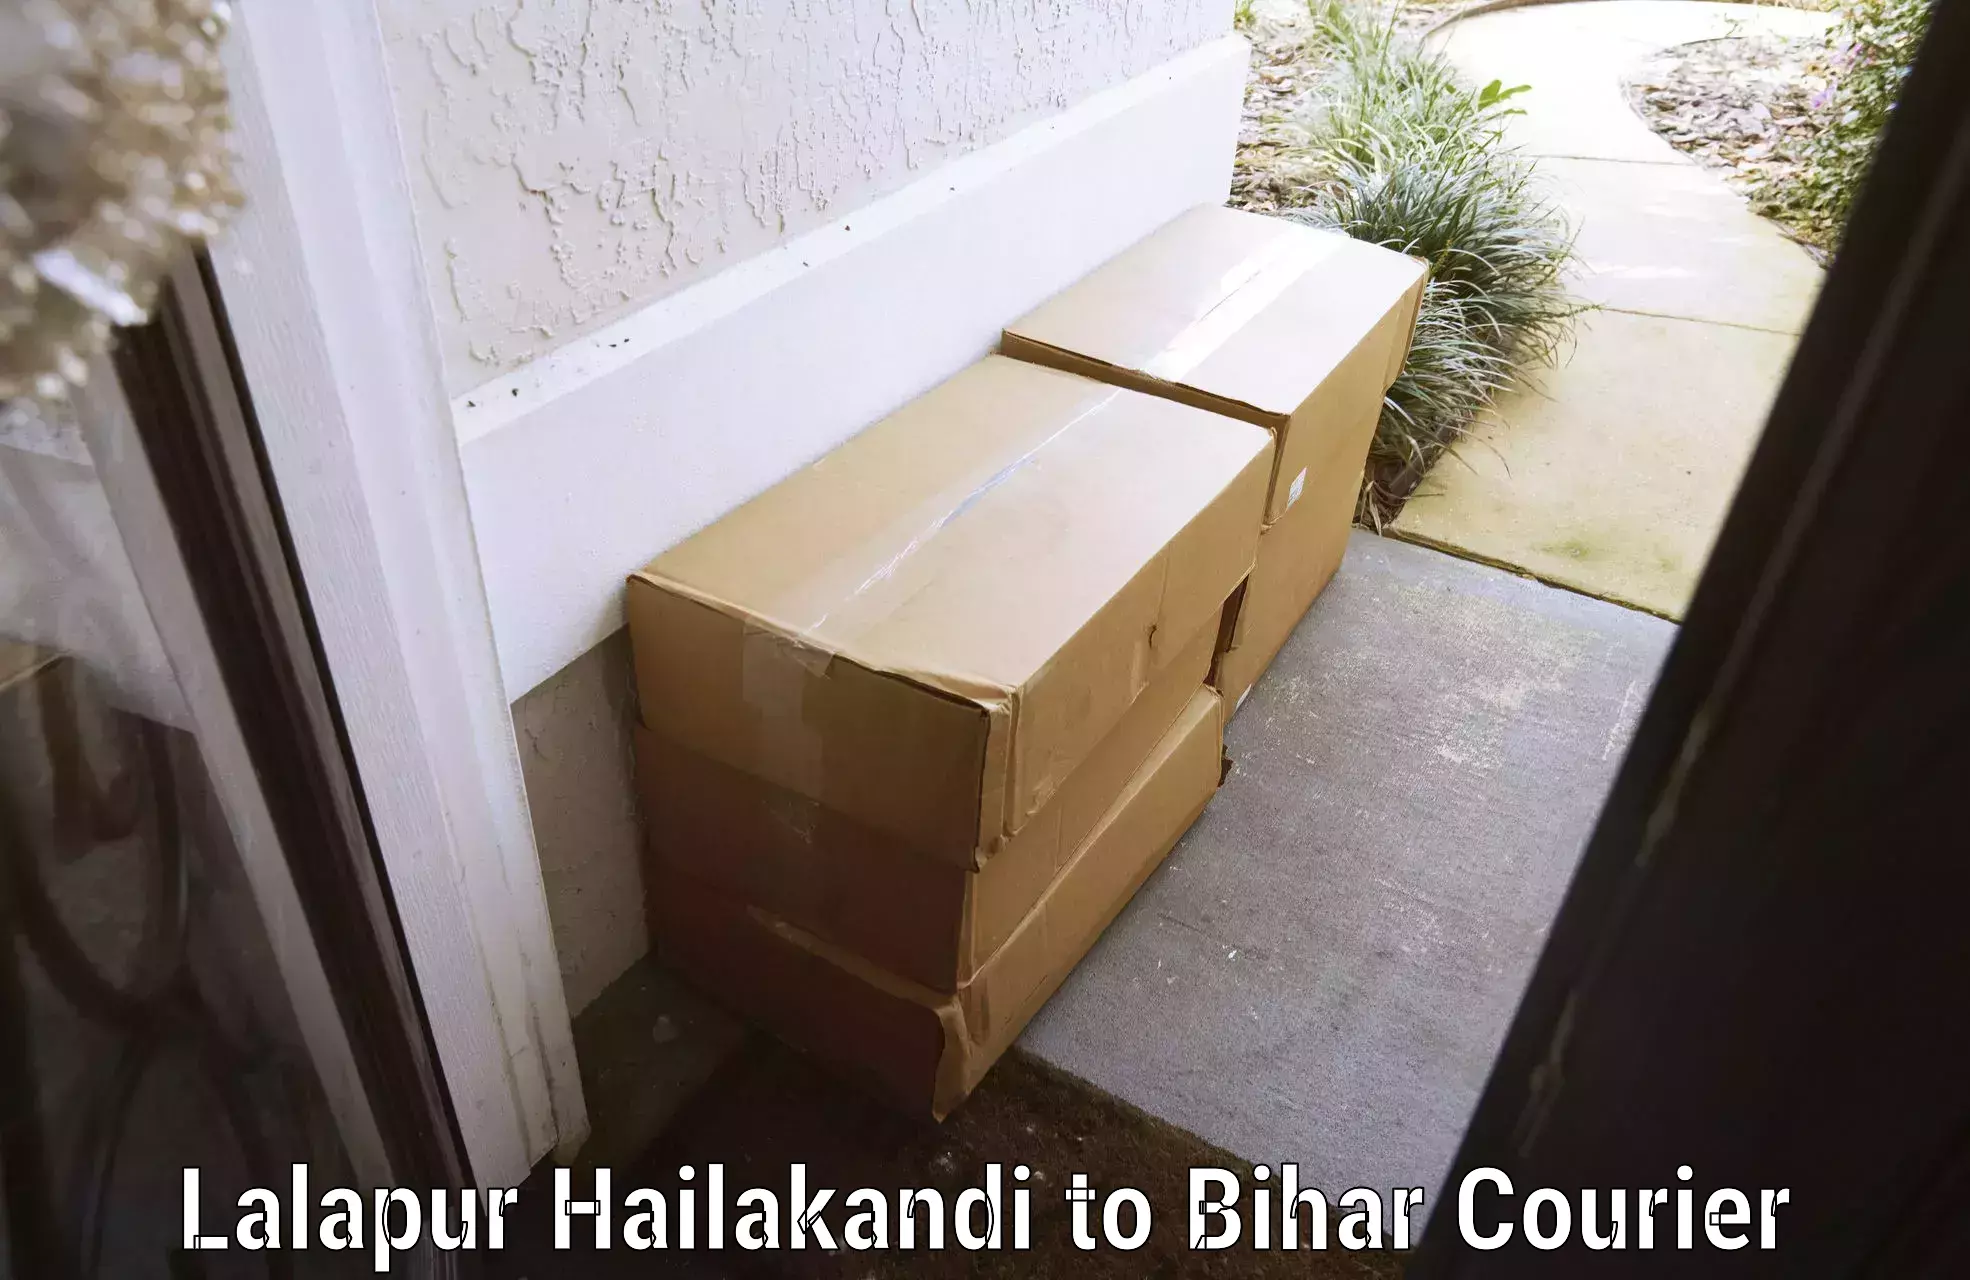 Baggage shipping experts Lalapur Hailakandi to Madhubani